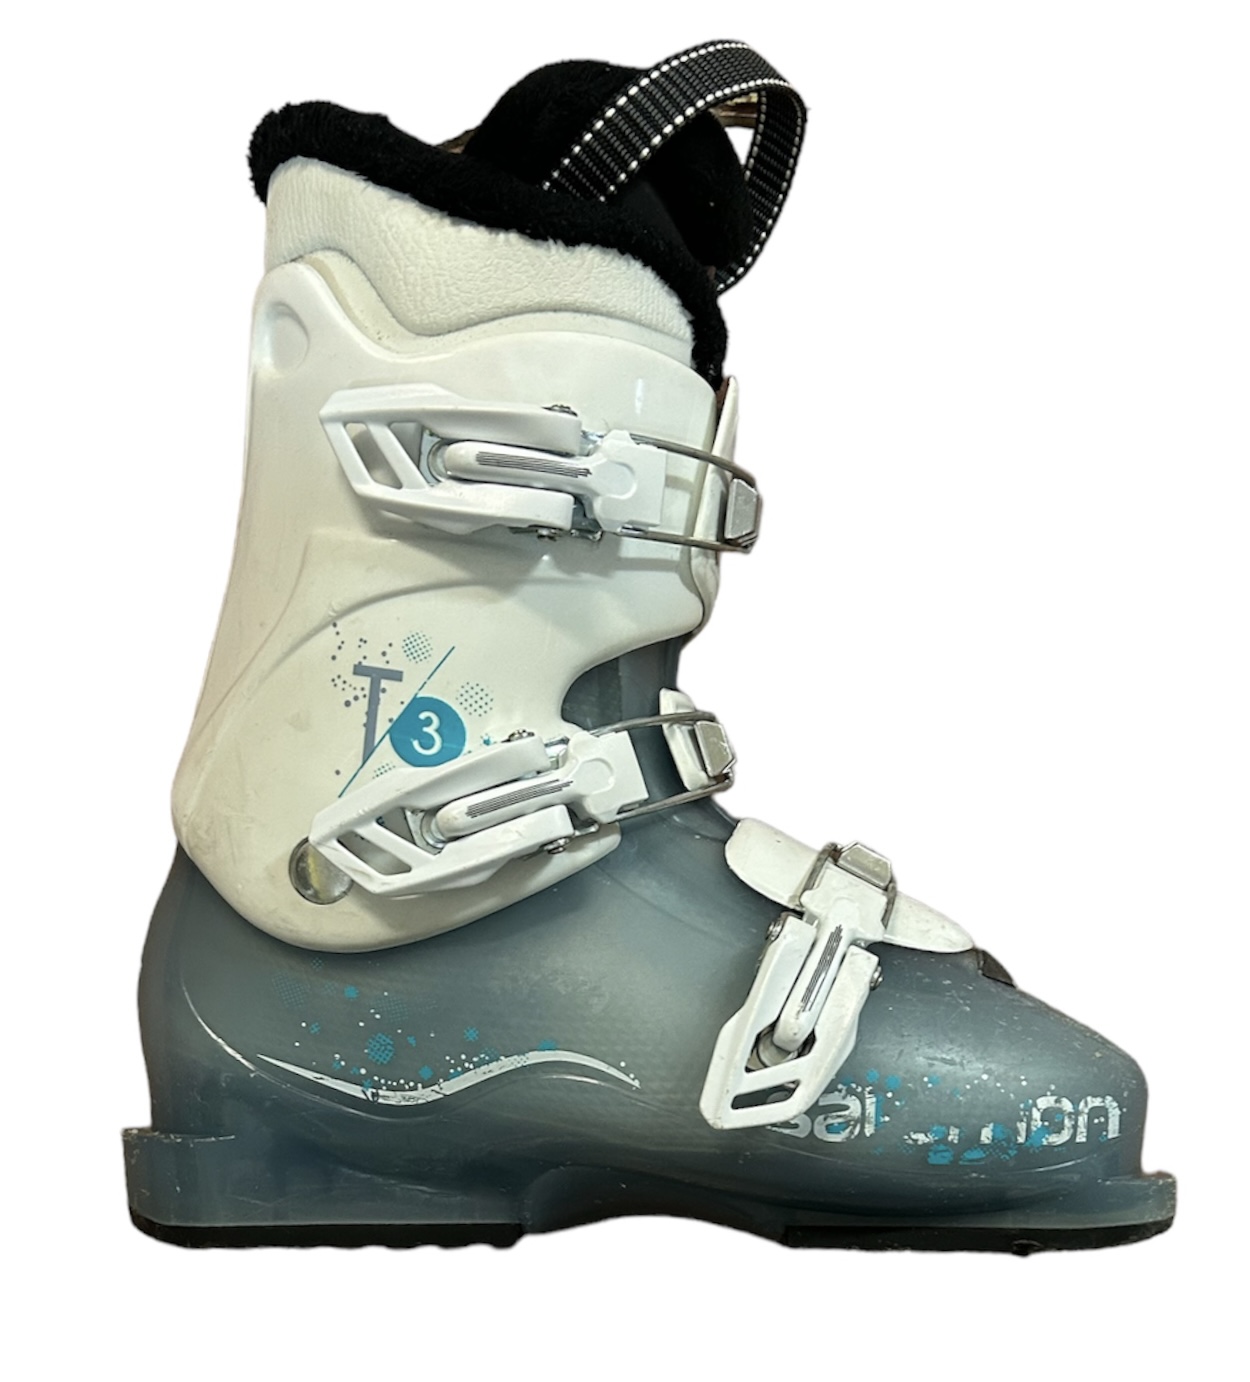 Używane buty narciarskie SALOMON 23,5 / 276mm rozmiar 37 :: Sklep Sportowy  - outlet sportowy, koncówki kolekcji, wyprzedaże, narty, deski, wiązania,  sprzet narciarski, buty sportowe